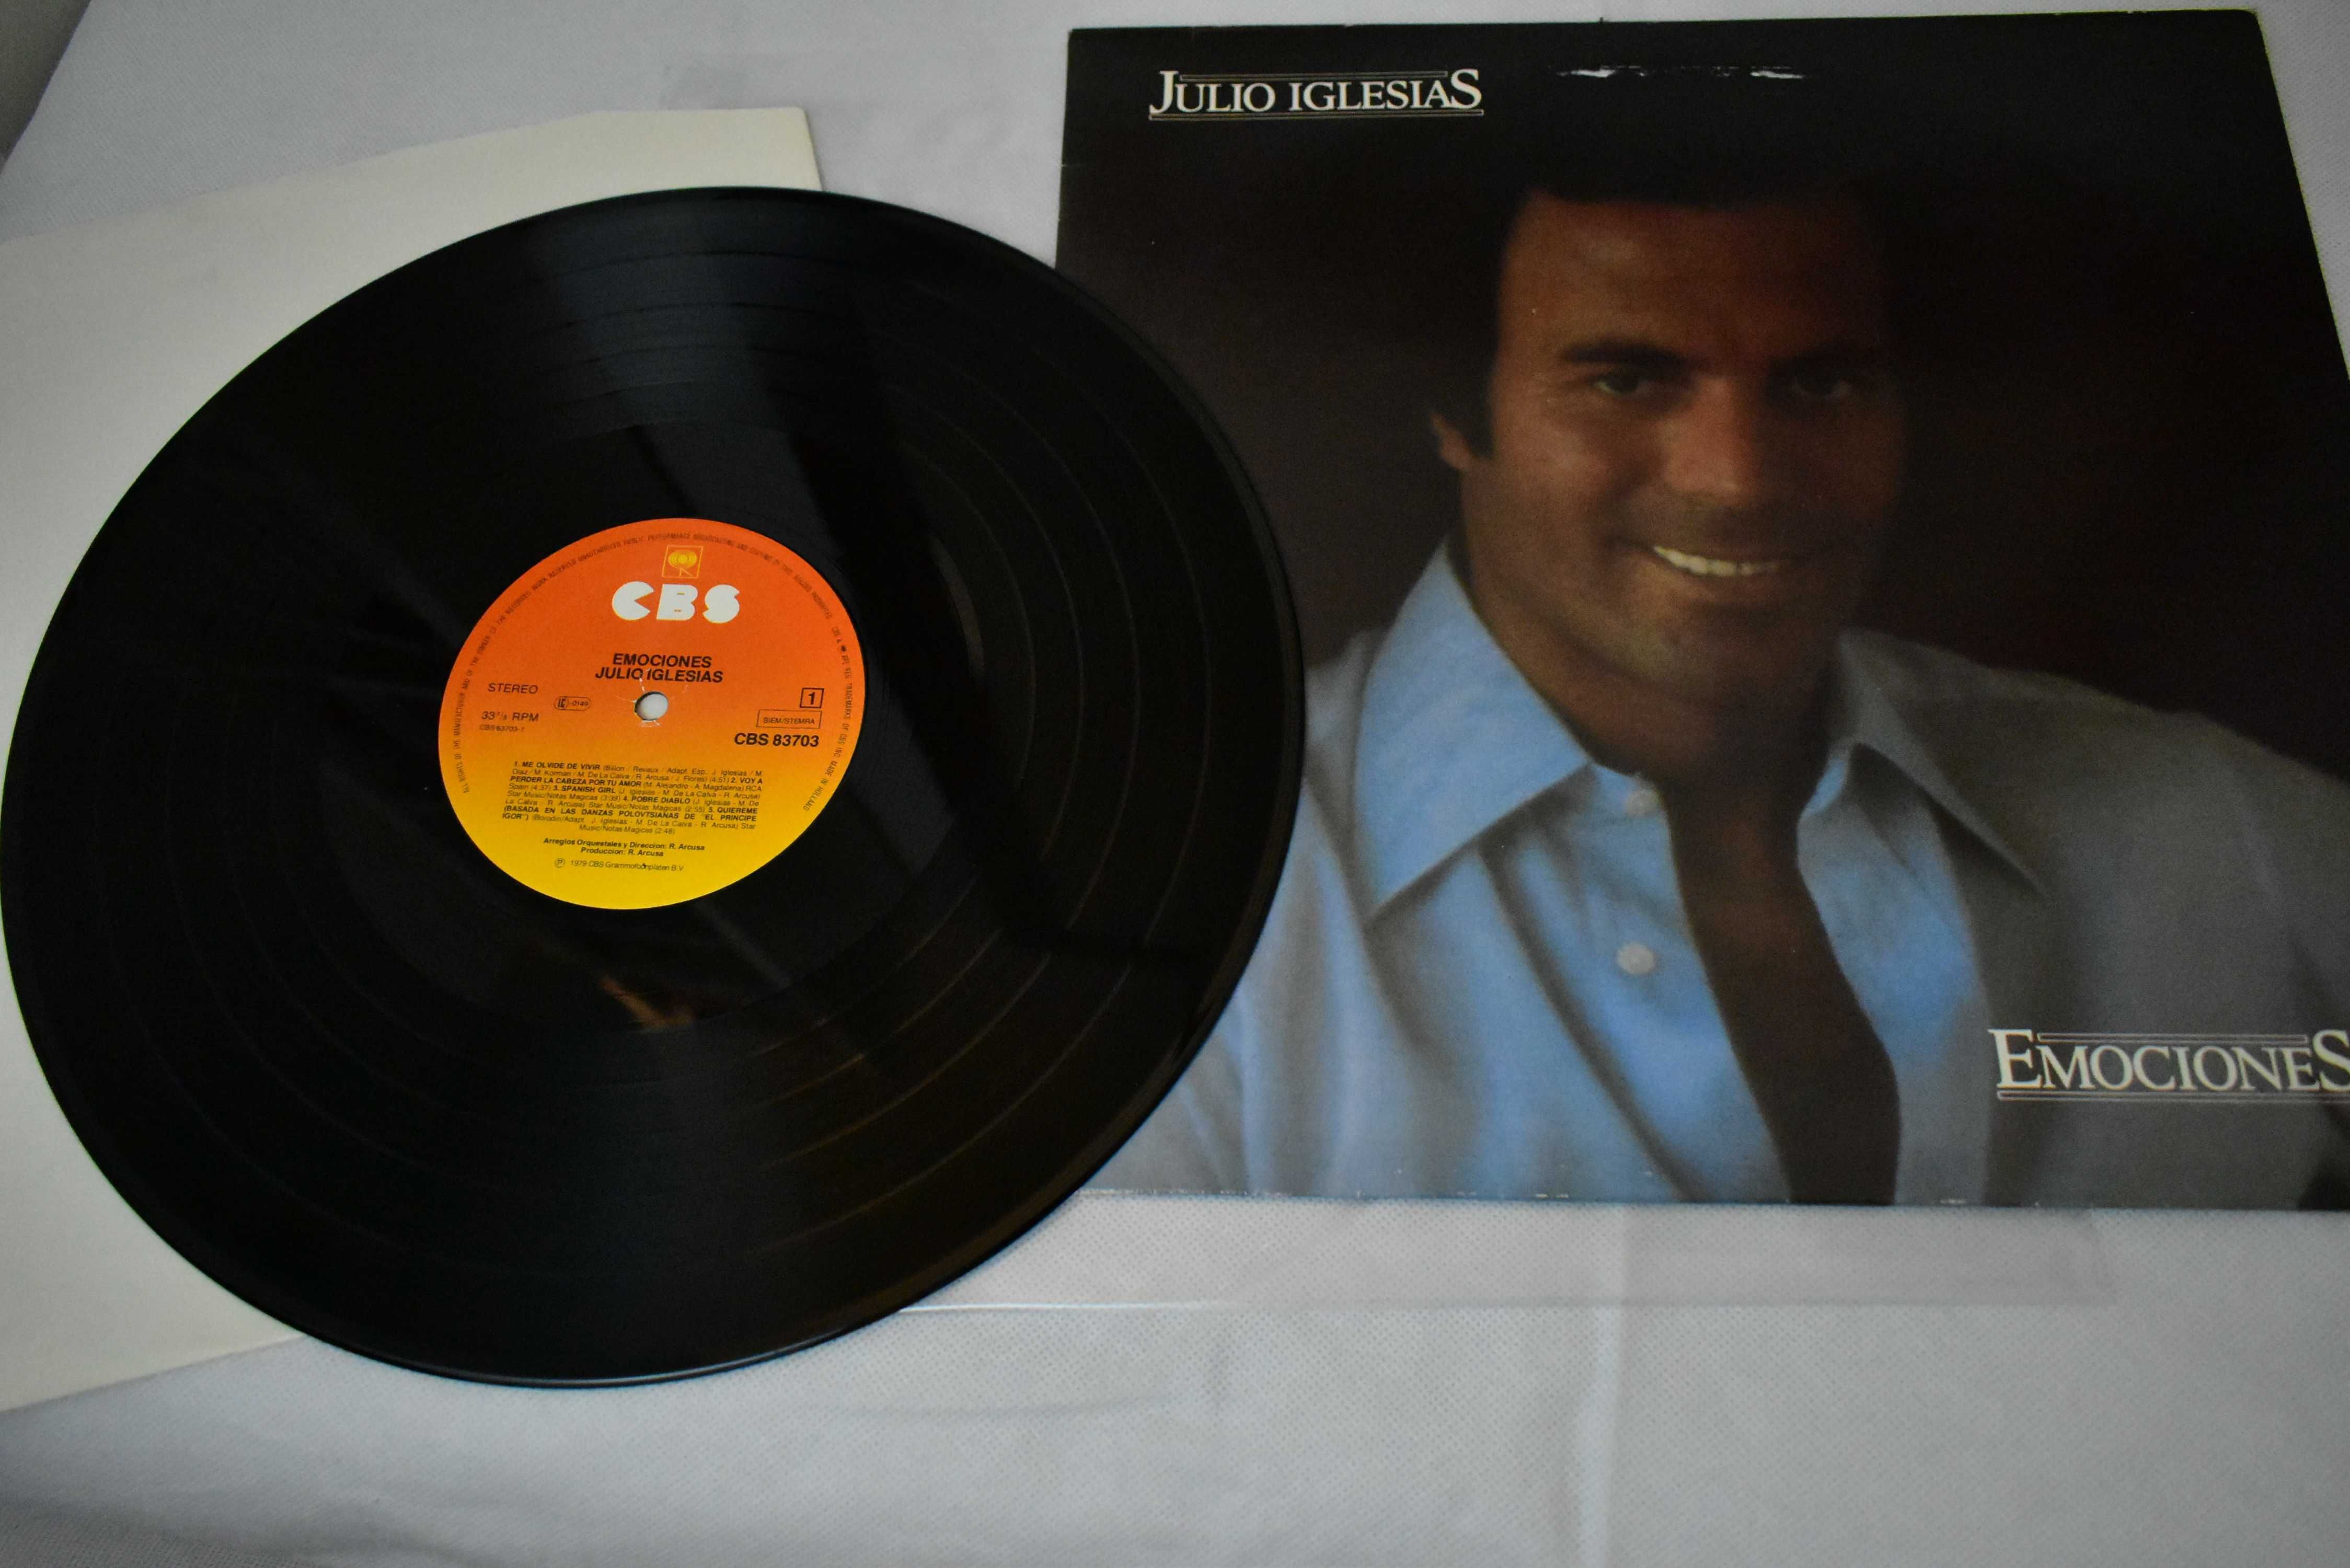 Płyta winylowa Julio Iglesias Emociones